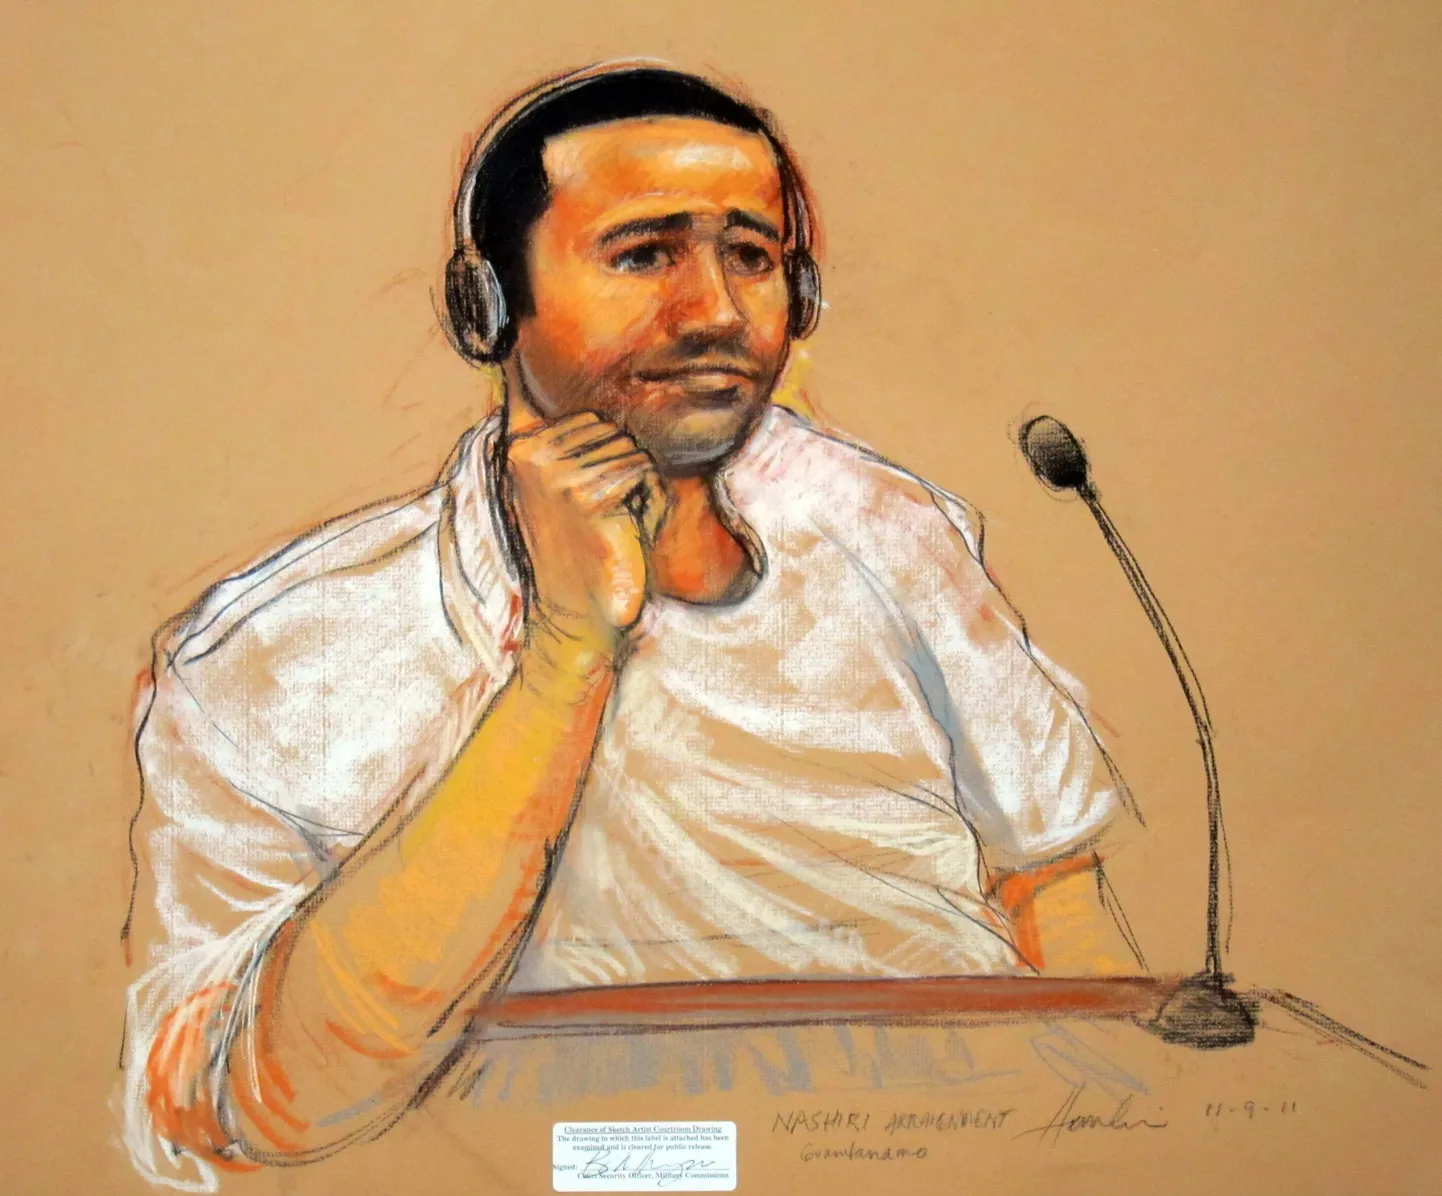 Kohtujoonistus Abd al-Rahim al-Nashirist Guantanamos.